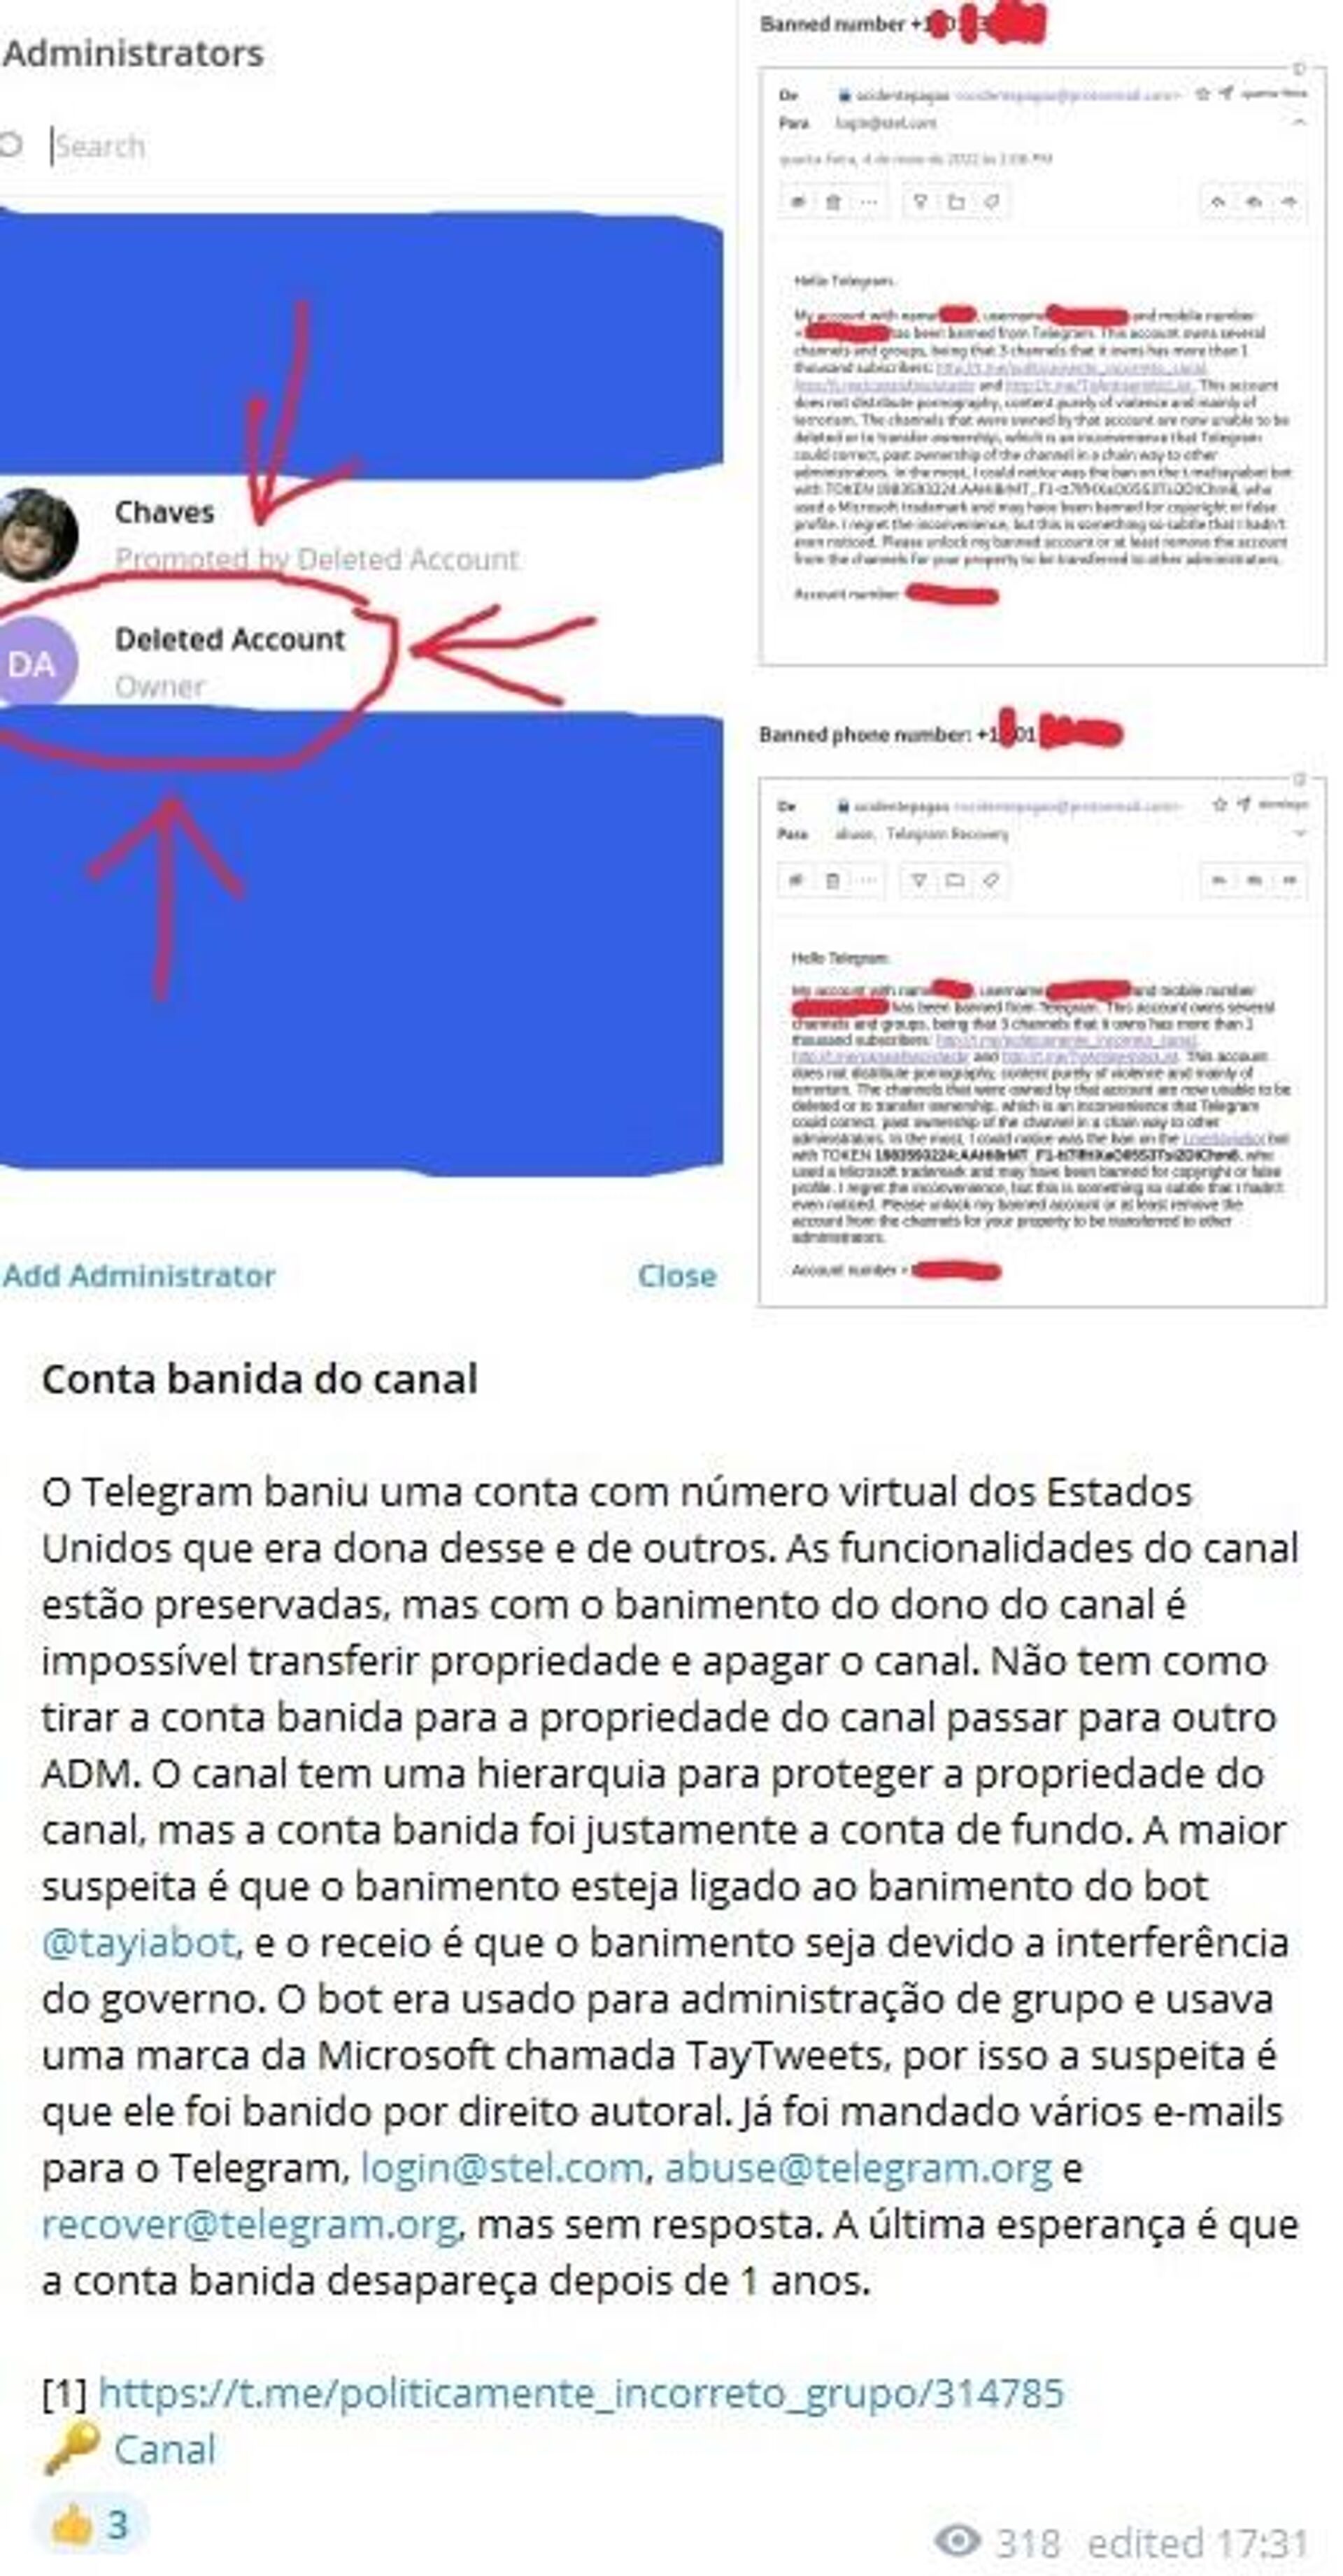 Administradores de página neonazista dizem que vão criar outras após Telegram derrubar publicações e conta por violação de regras - Sputnik Brasil, 1920, 24.07.2022